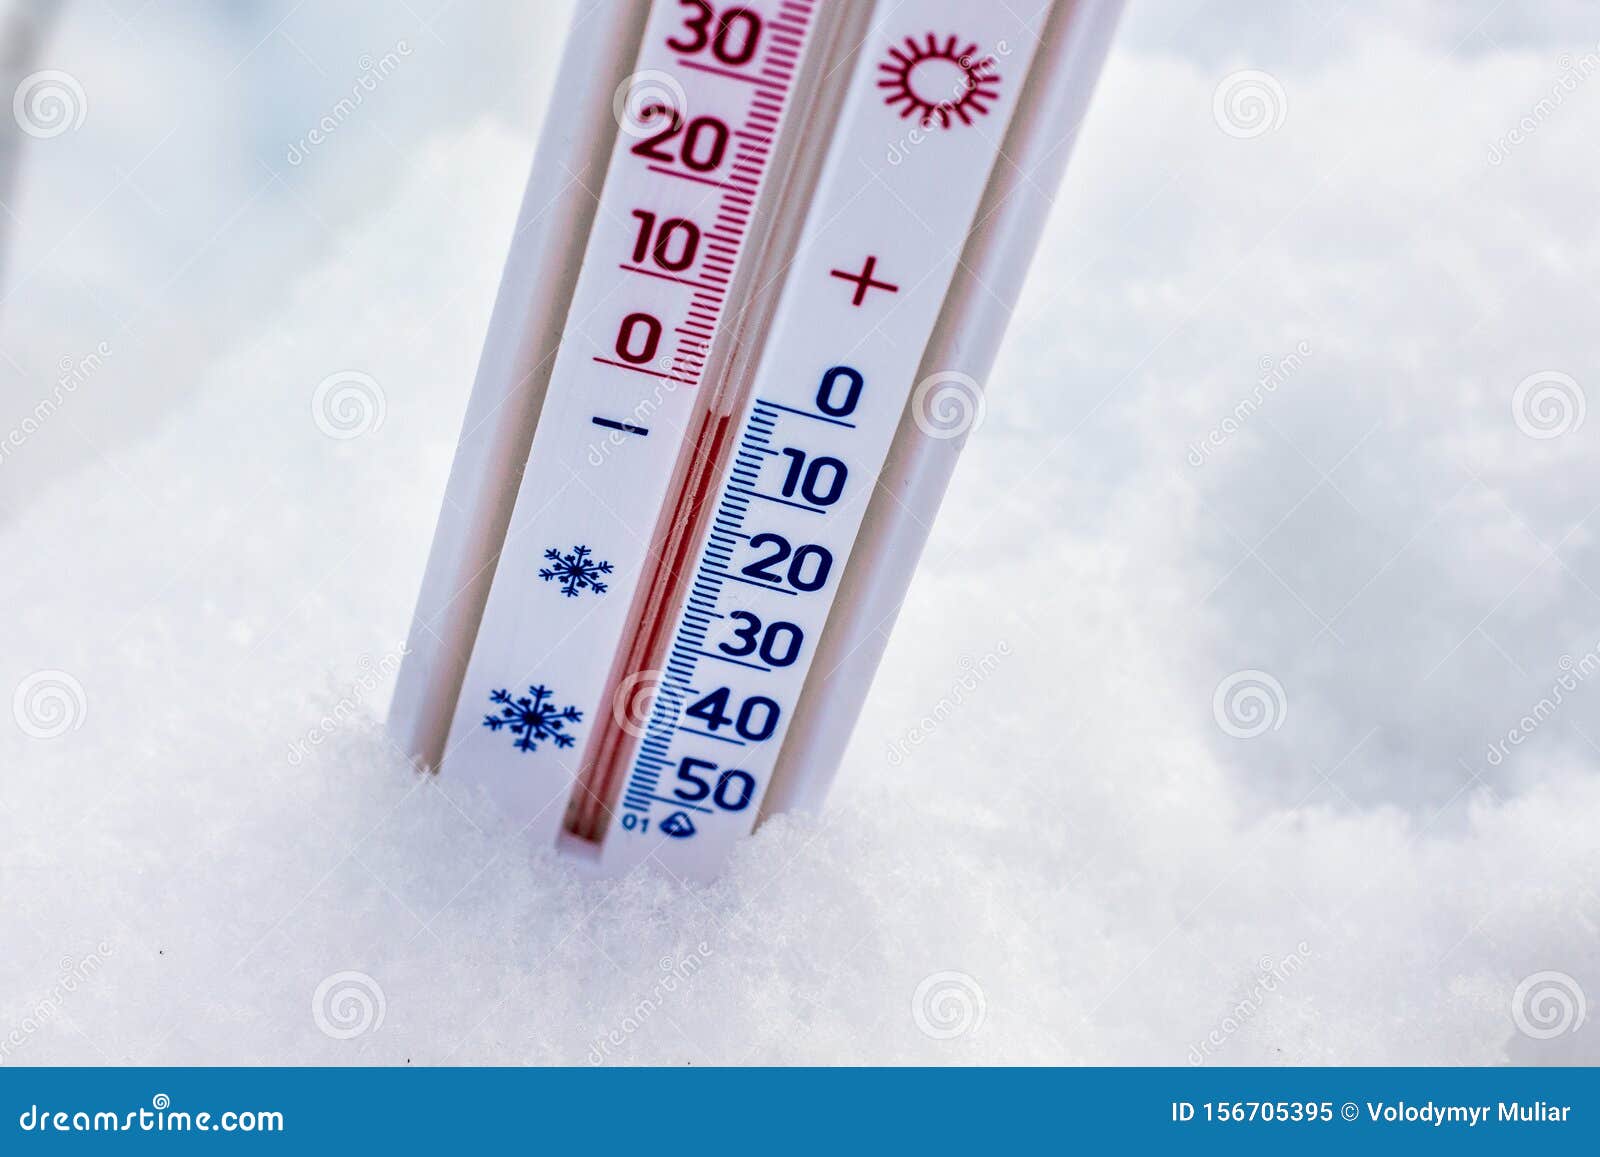 Резкий перепад температуры воздуха. Термометр в снегу. Термометр ноль градусов. Термометр ниже нуля. Термометр -3 градуса.